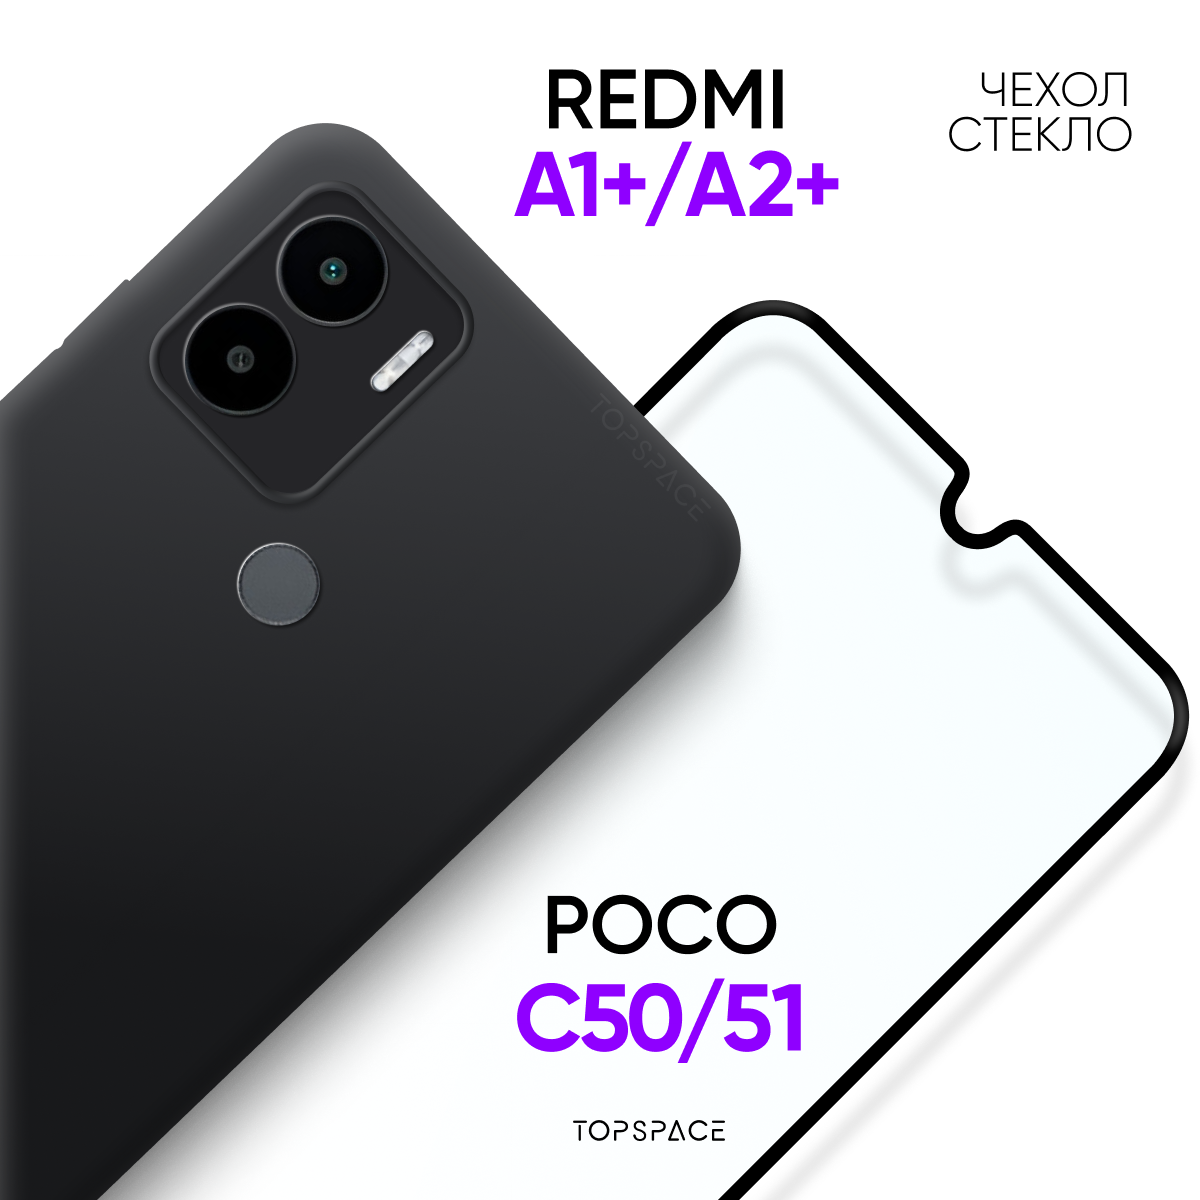 Комплект 2 в 1: Противоударный матовый чехол с защитой камеры + полноэкранное стекло для Xiaomi Redmi A1+ / A2+ / Poco C50 / C51